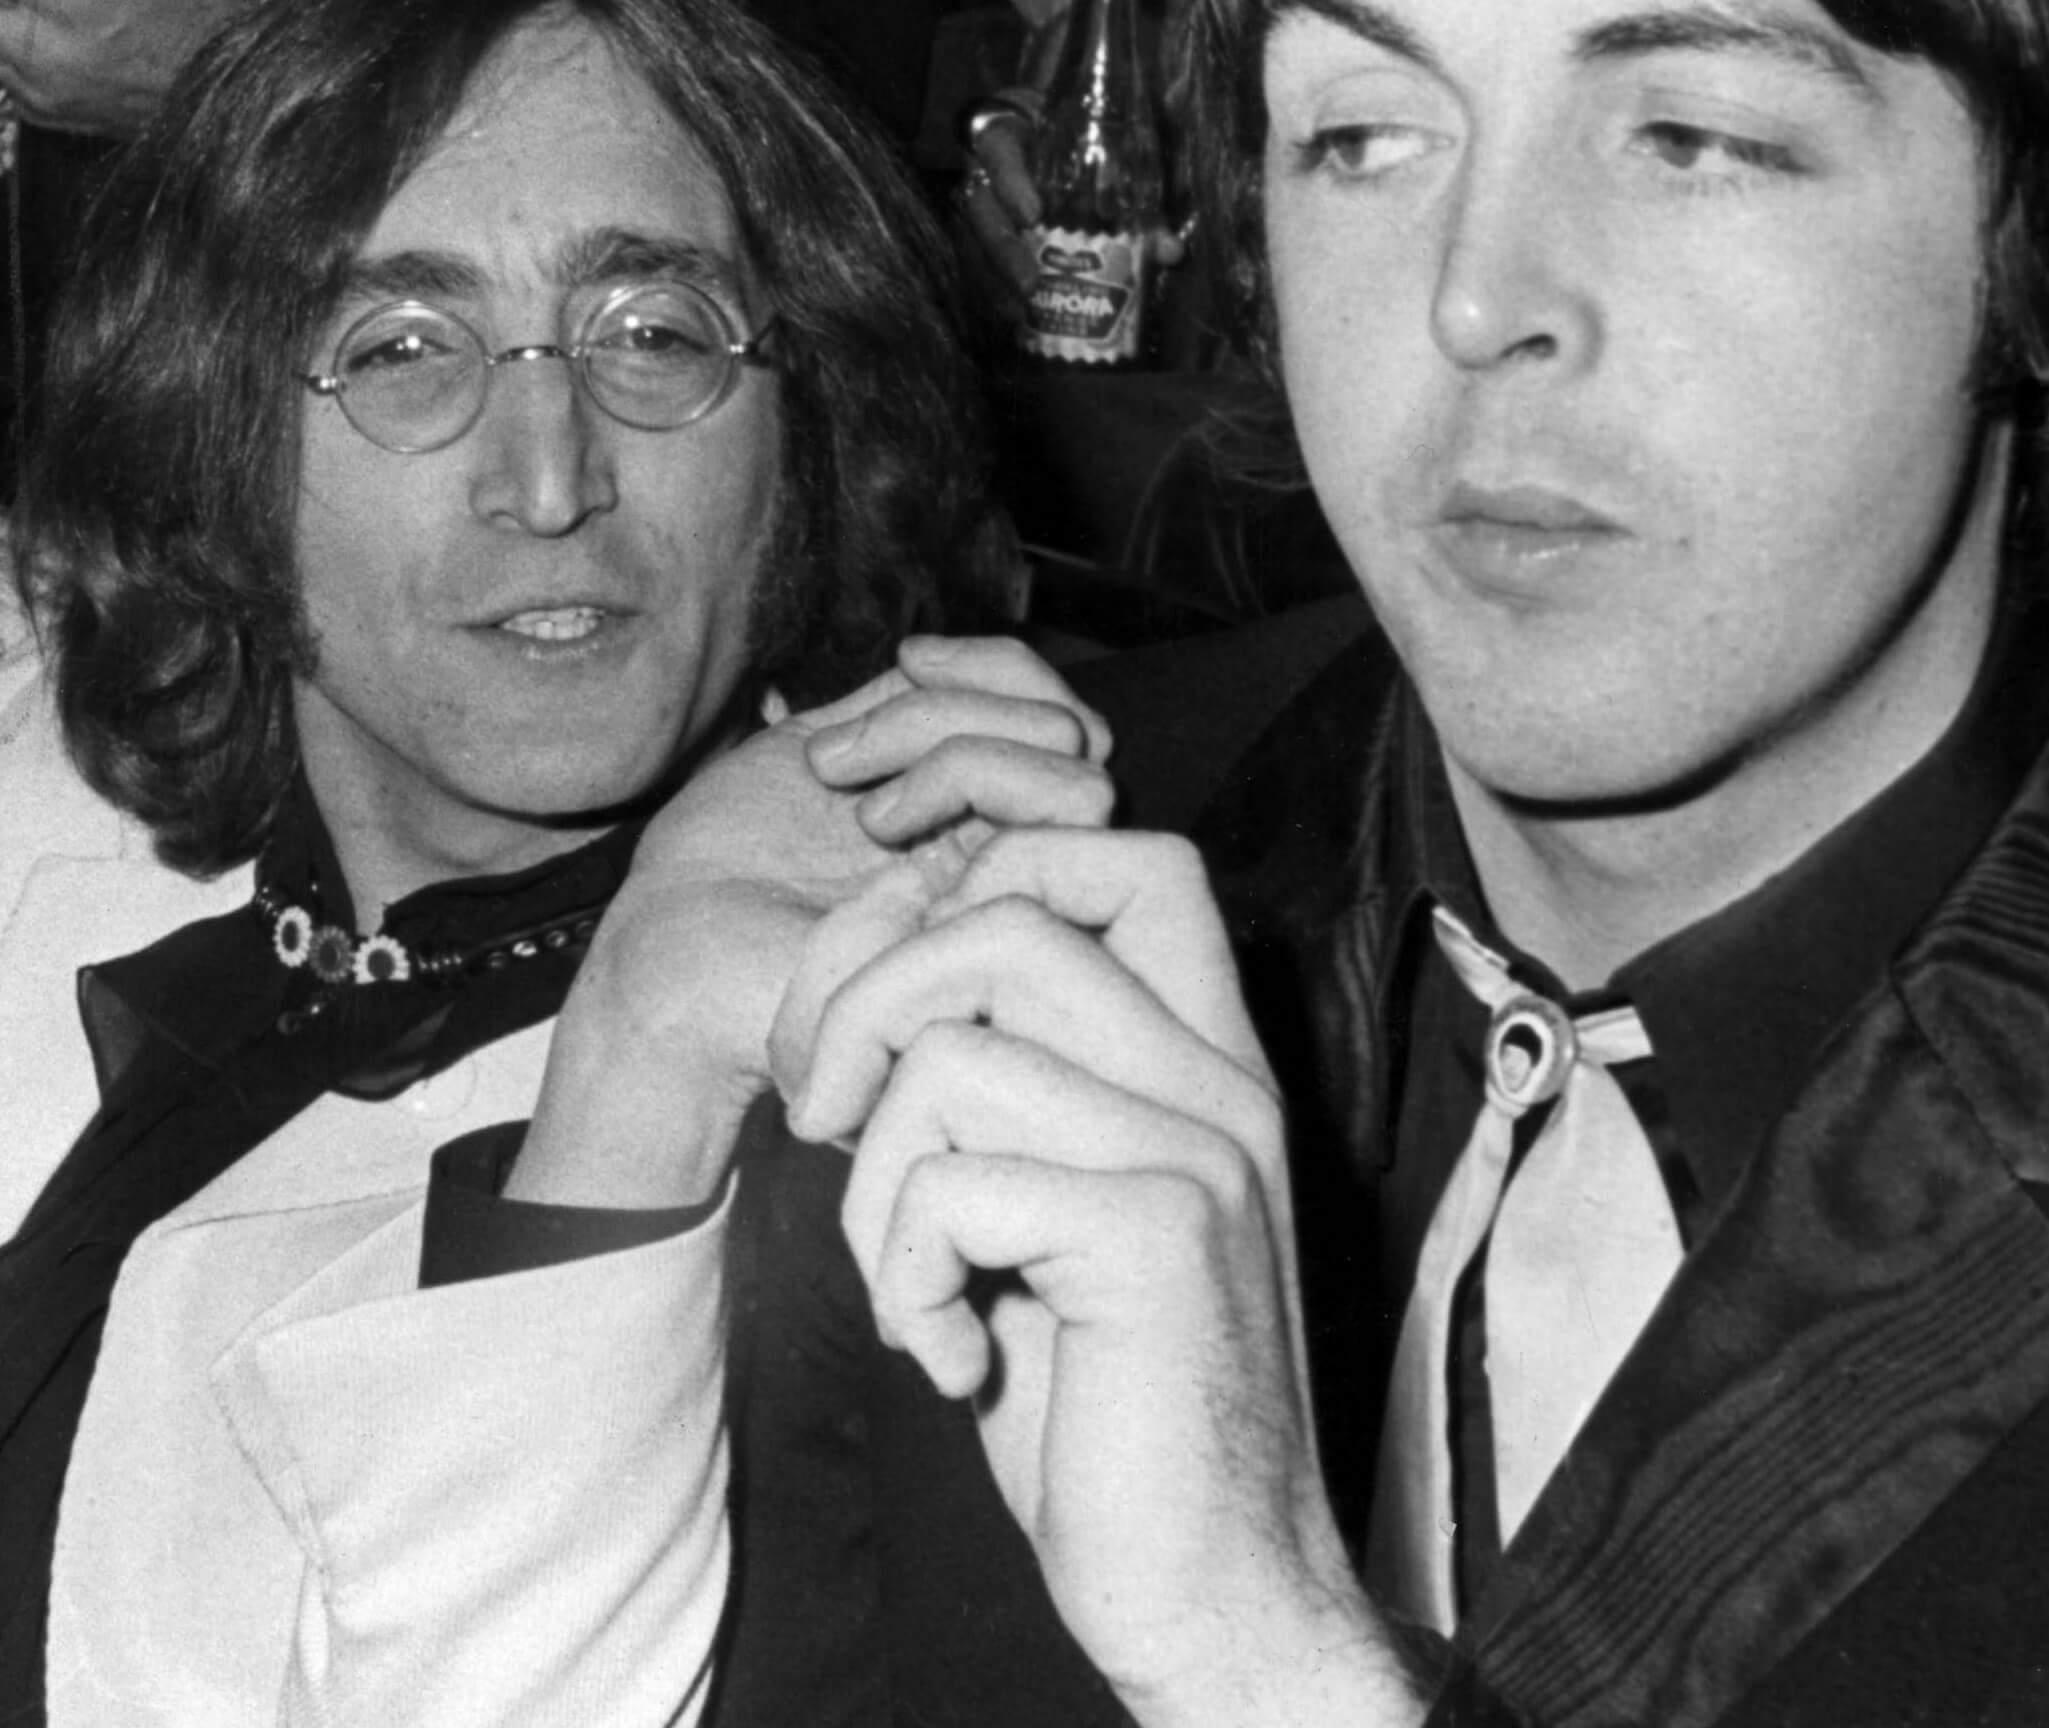 John Lennon and Paul McCartney in black-and-white